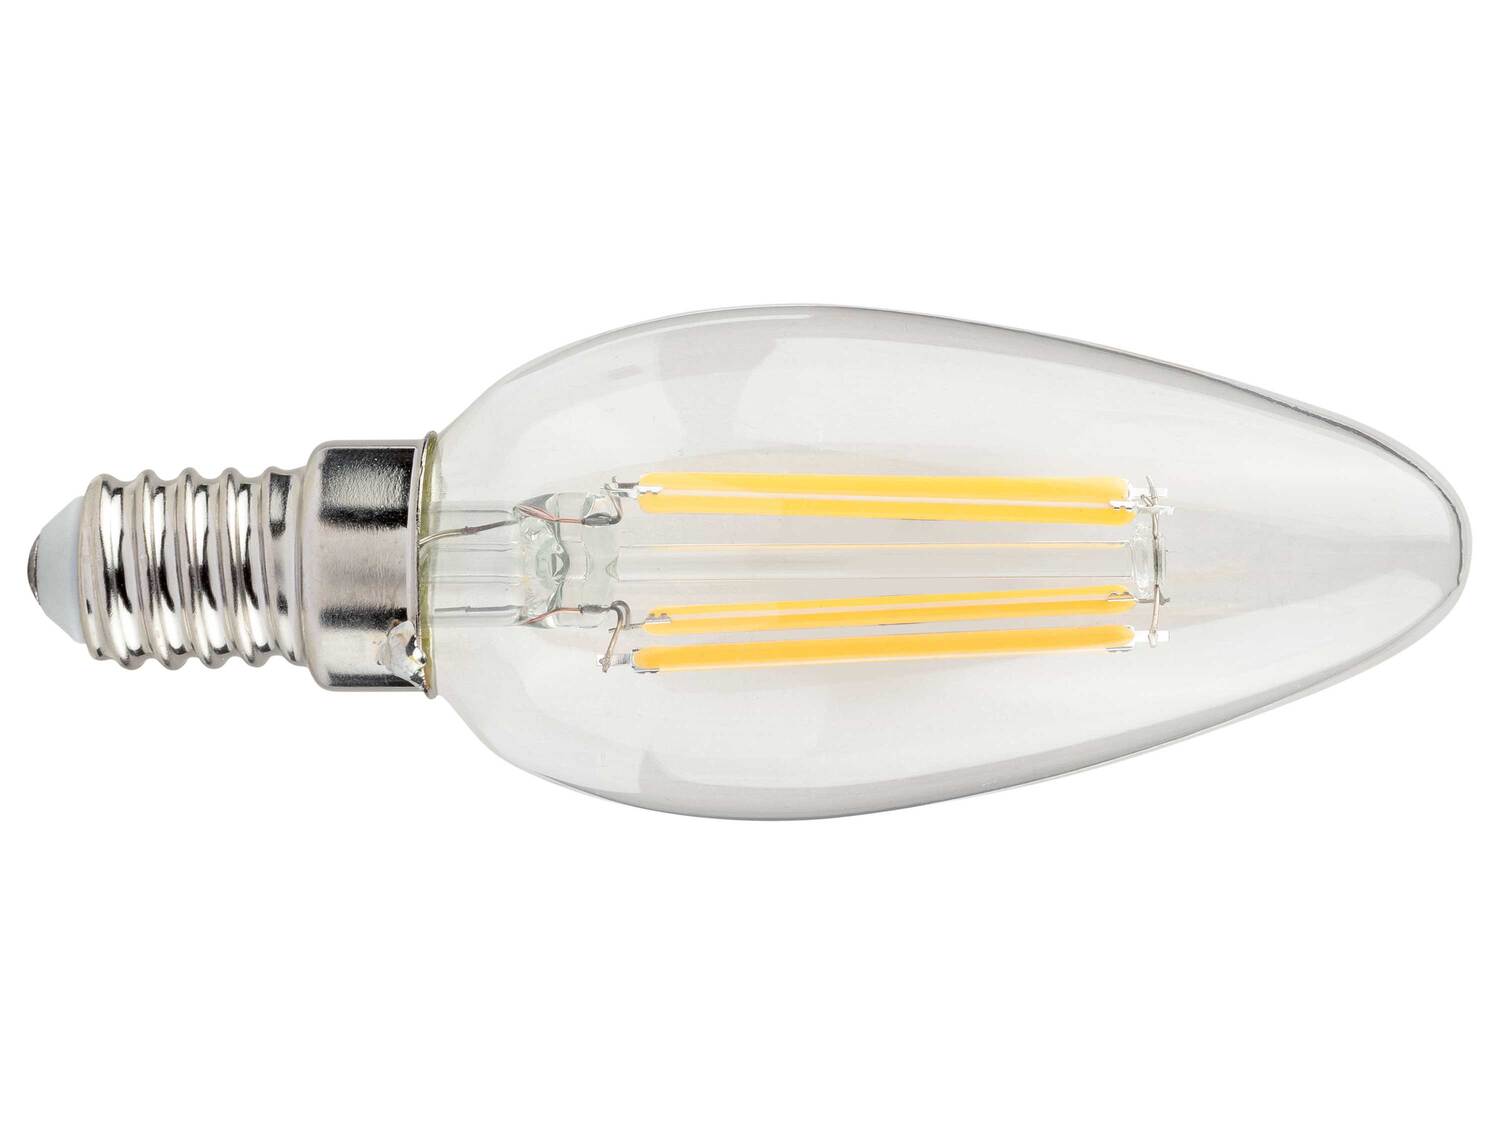 Ampoule LED à filament , le prix 1.99 € 
- 4,7 W
- 470 lumen
- Au choix : ...